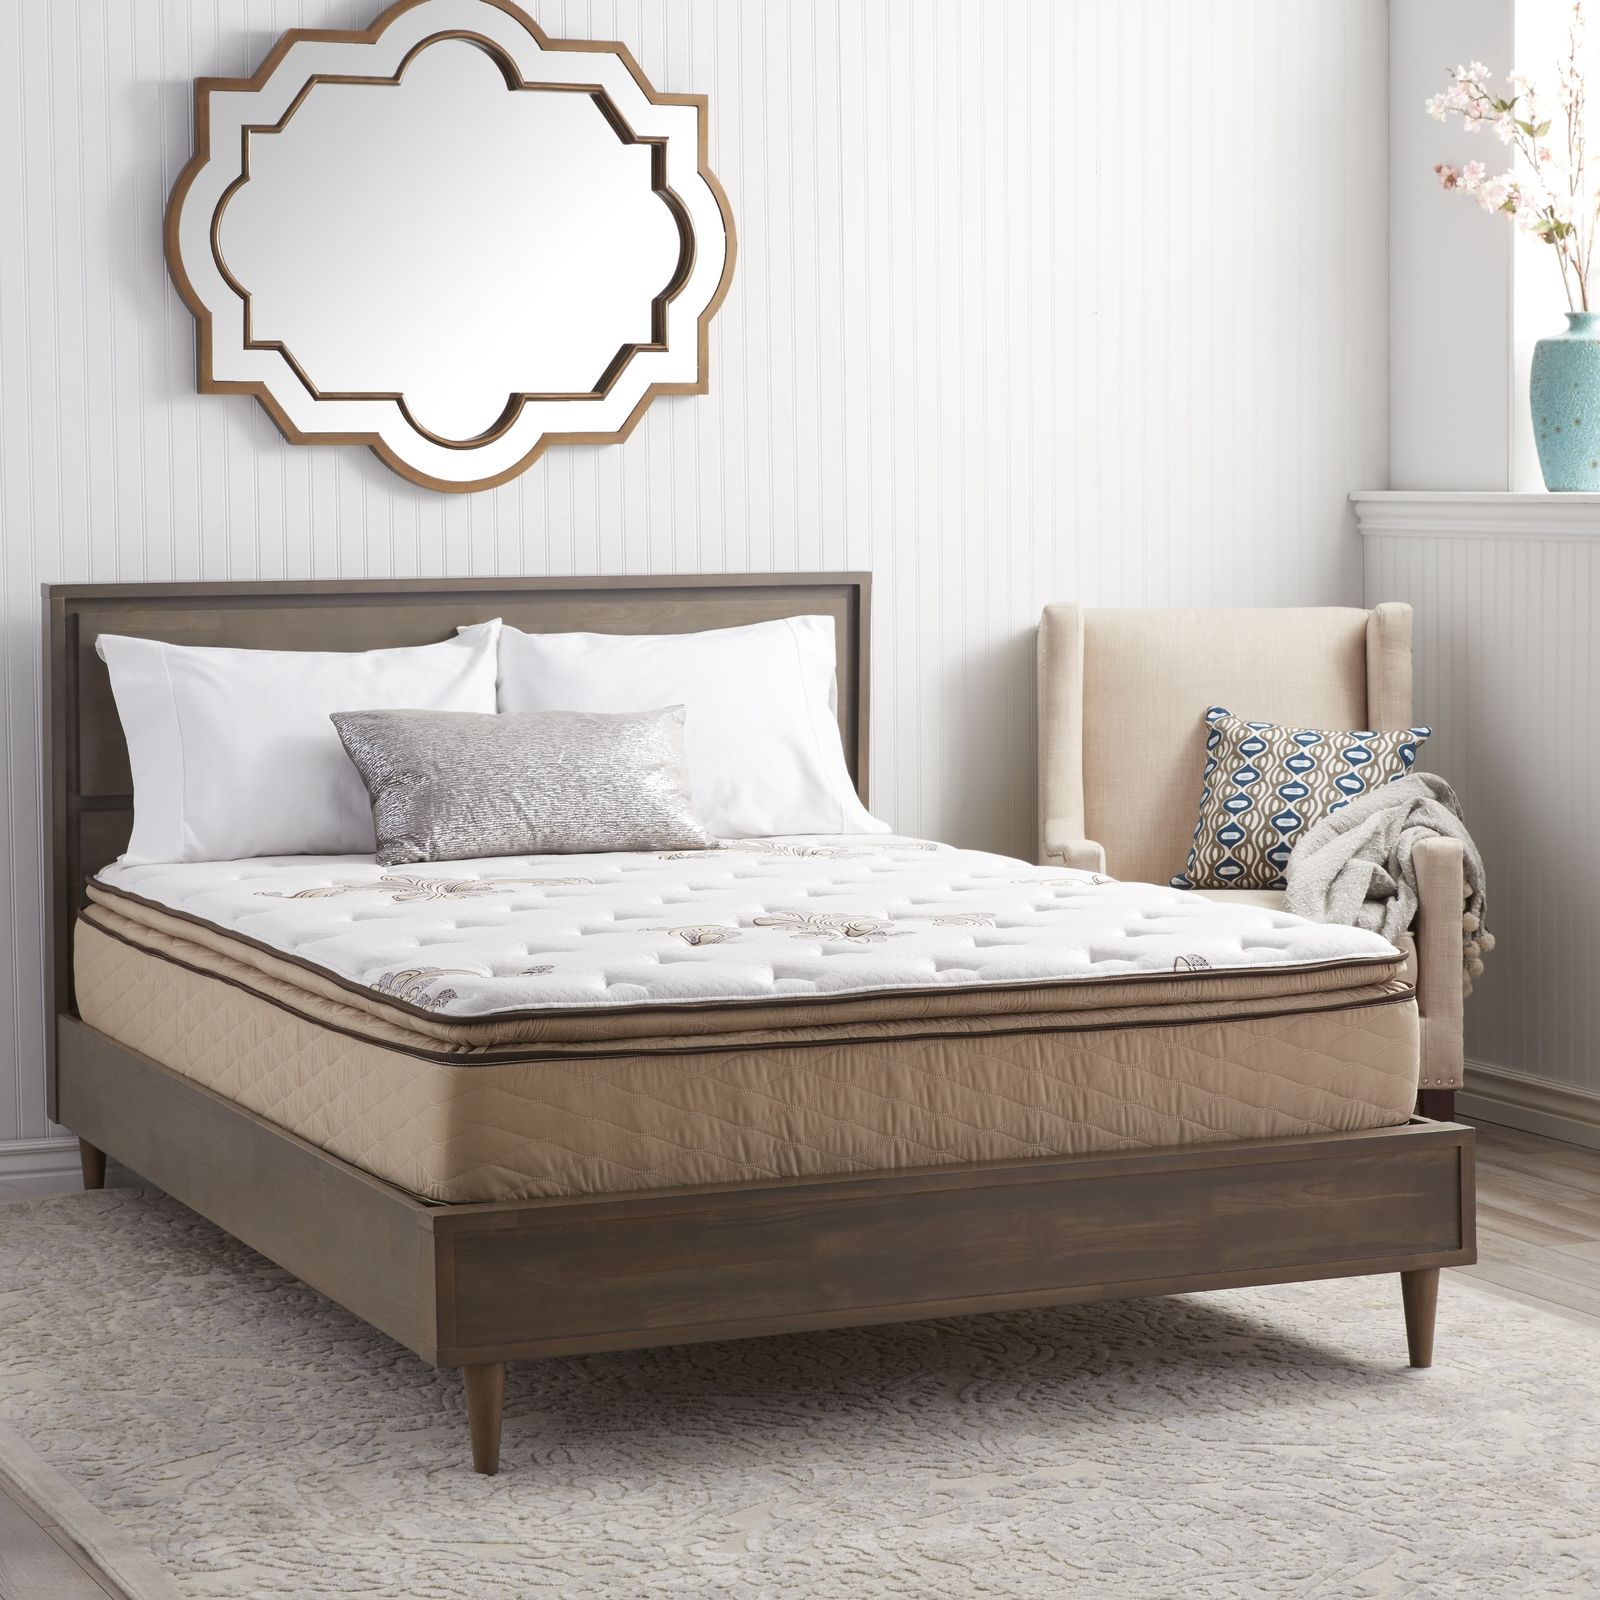 Pocket spring mattress customized Bedroom Furniture pocket spring mattress customized Bedroom Furniture 